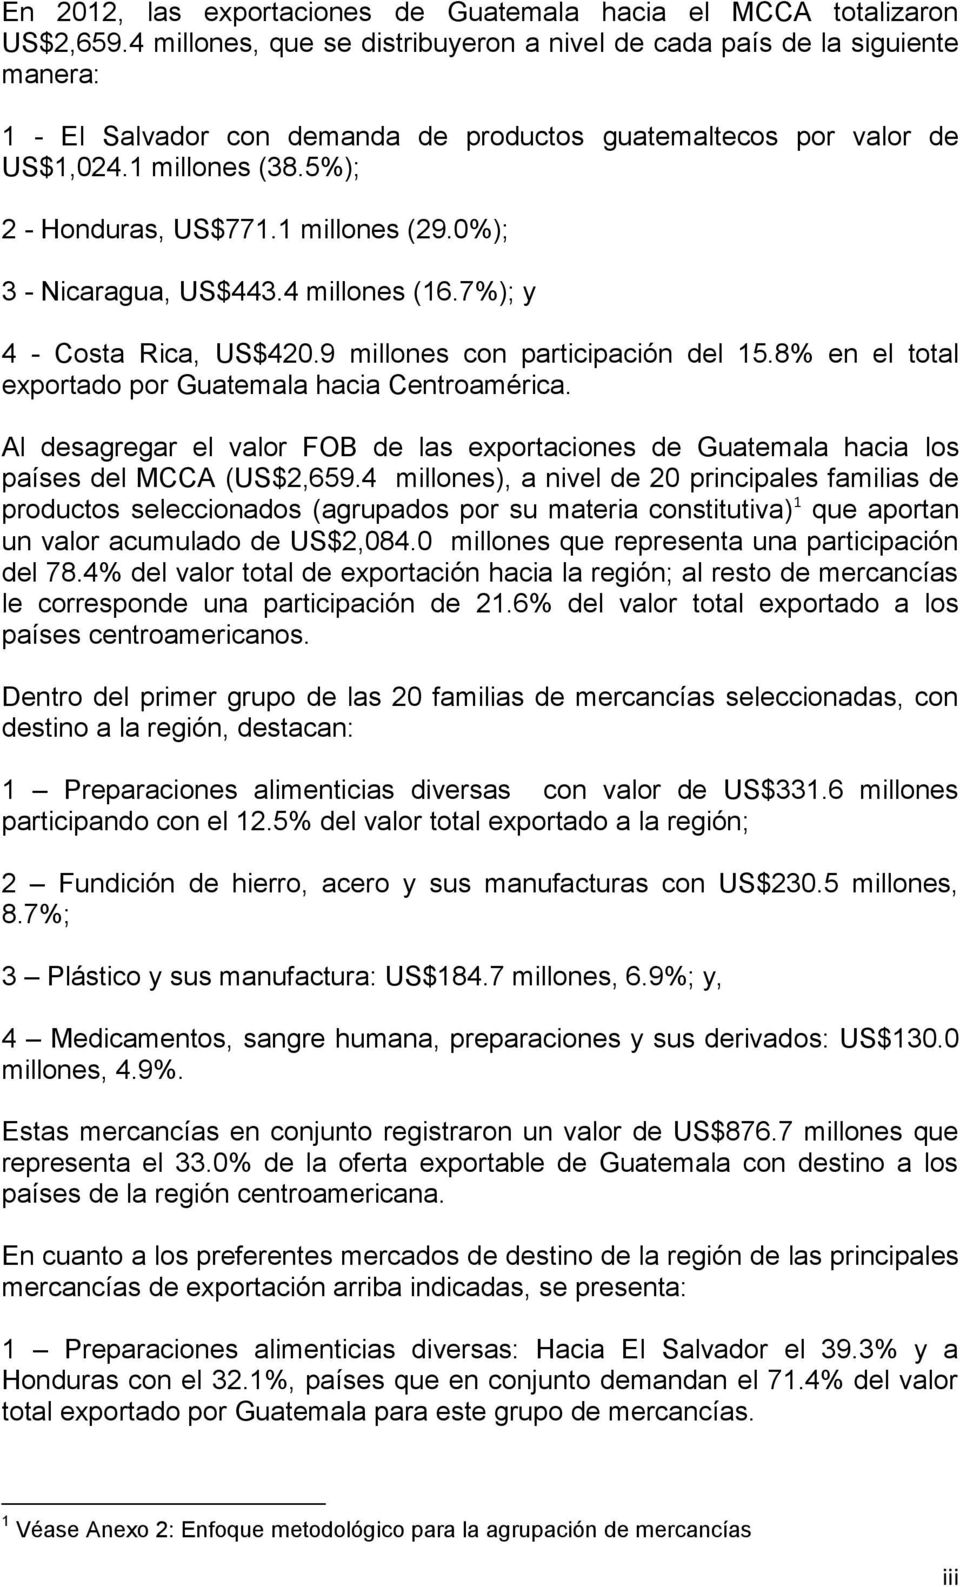 1 millones (29.0%); 3 - Nicaragua, US$443.4 millones (16.7%); y 4 - Costa Rica, US$420.9 millones con participación del 15.8% en el total exportado por Guatemala hacia Centroamérica.